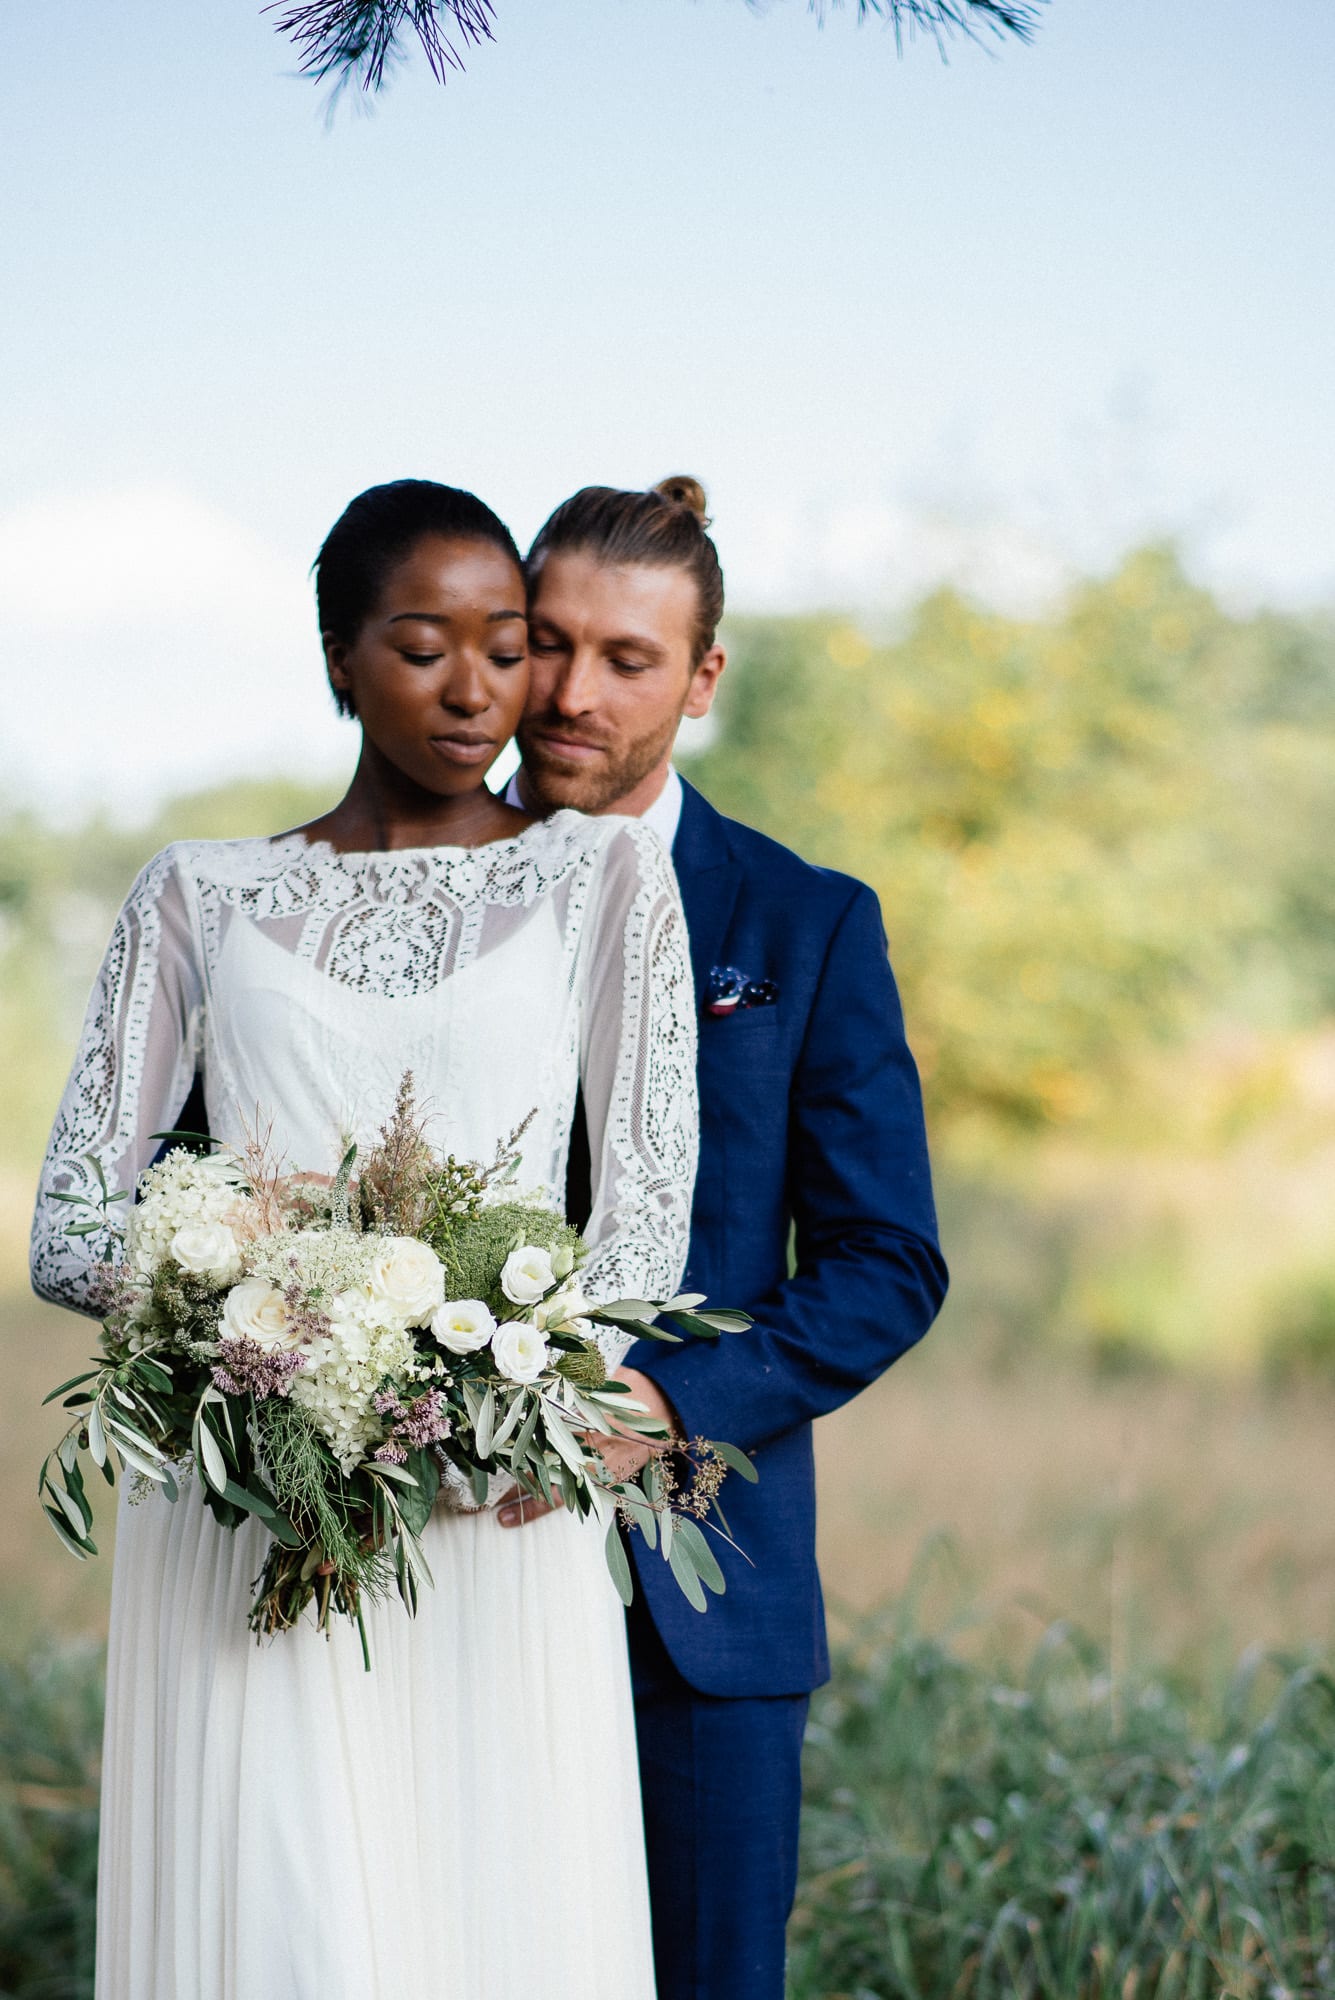 Eine Braut und ein Bräutigam umarmen sich draußen, während die Braut einen Blumenstrauß hält.